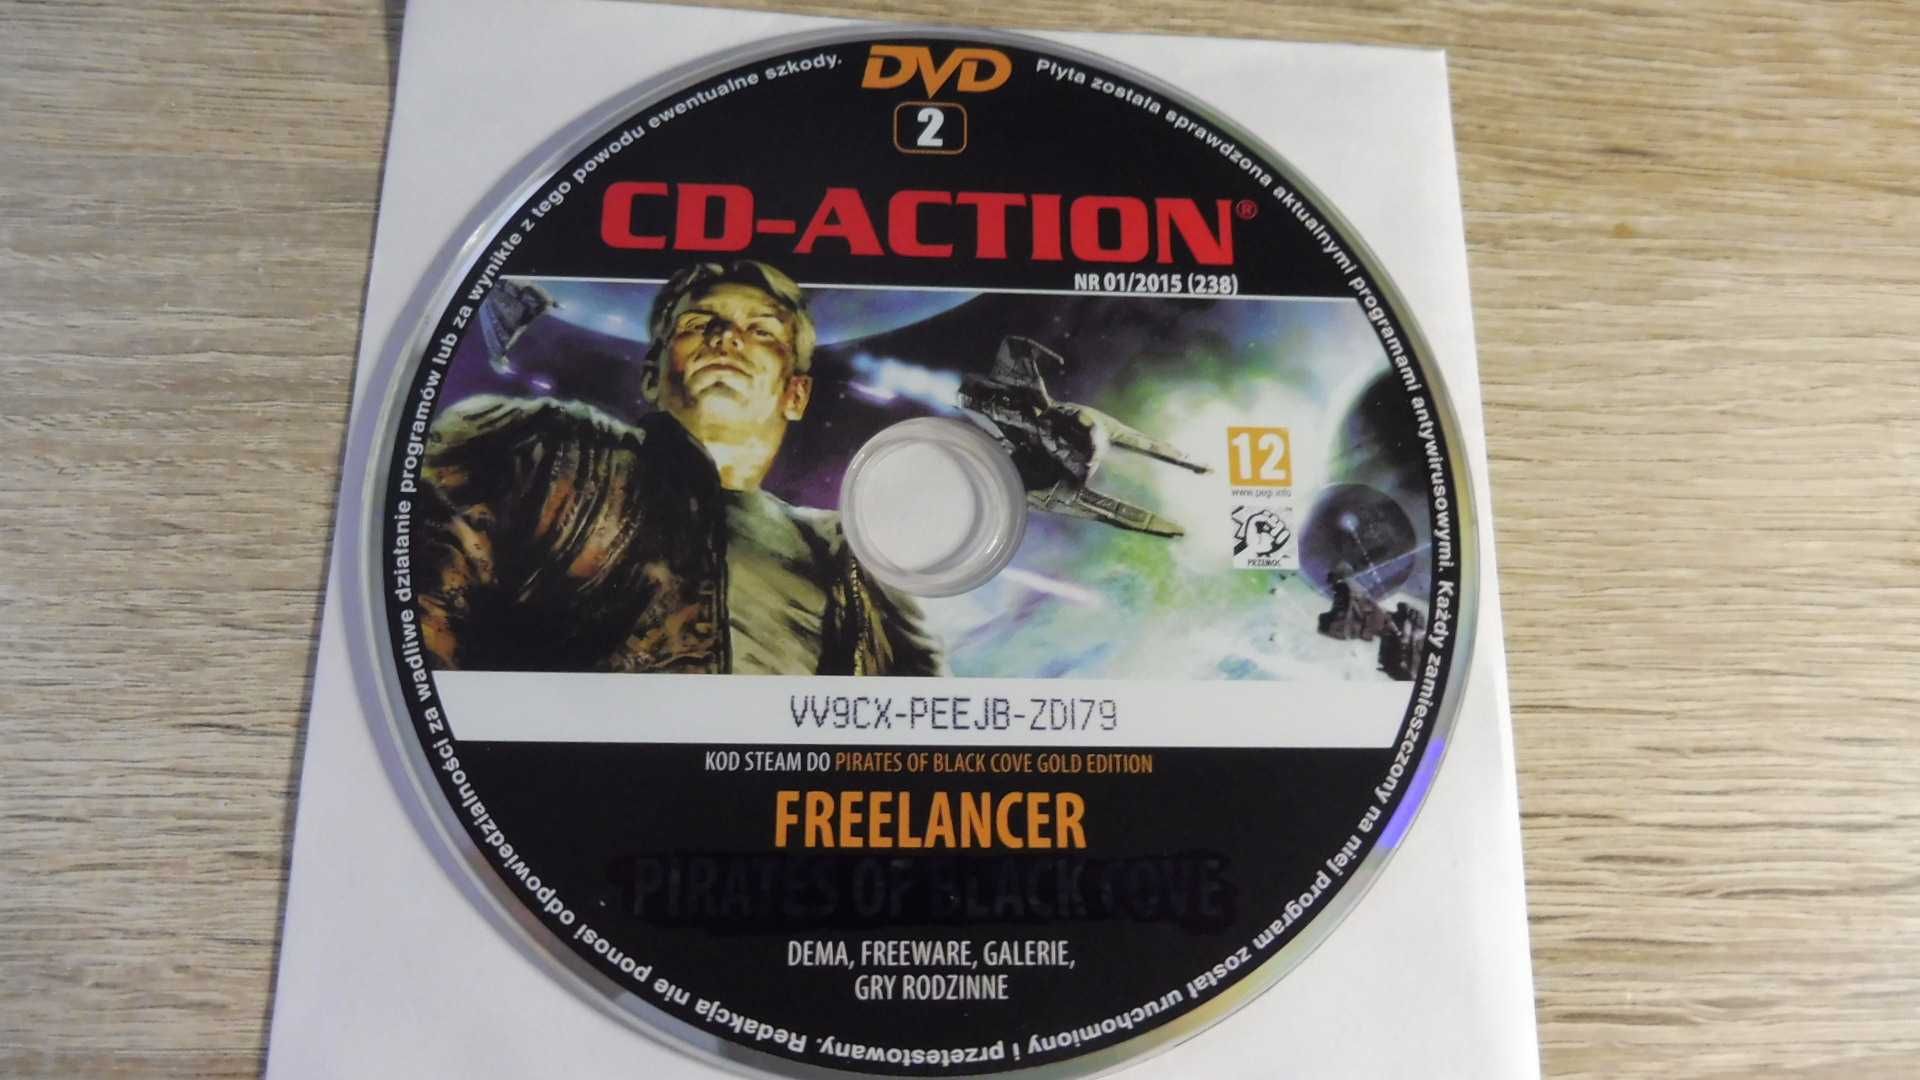 CD Action 01/2015 (238) - DVD 2 - Freelancer